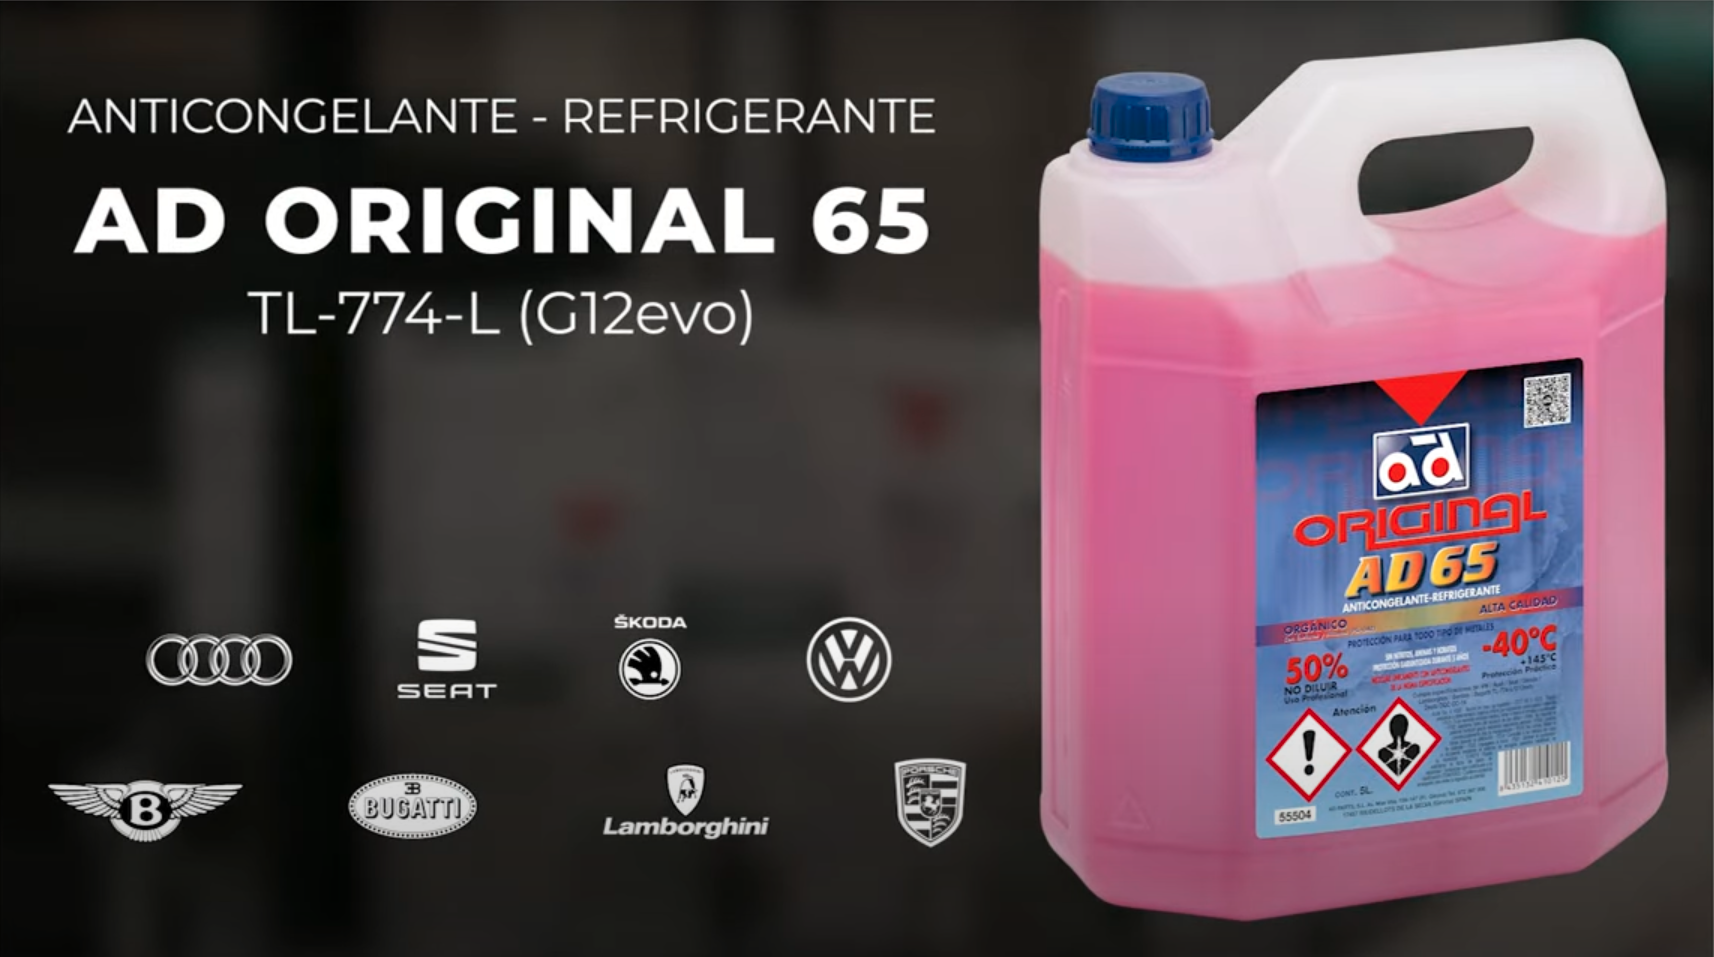 Ampliamos gama de anticongelantes – refrigerantes con AD Original 65